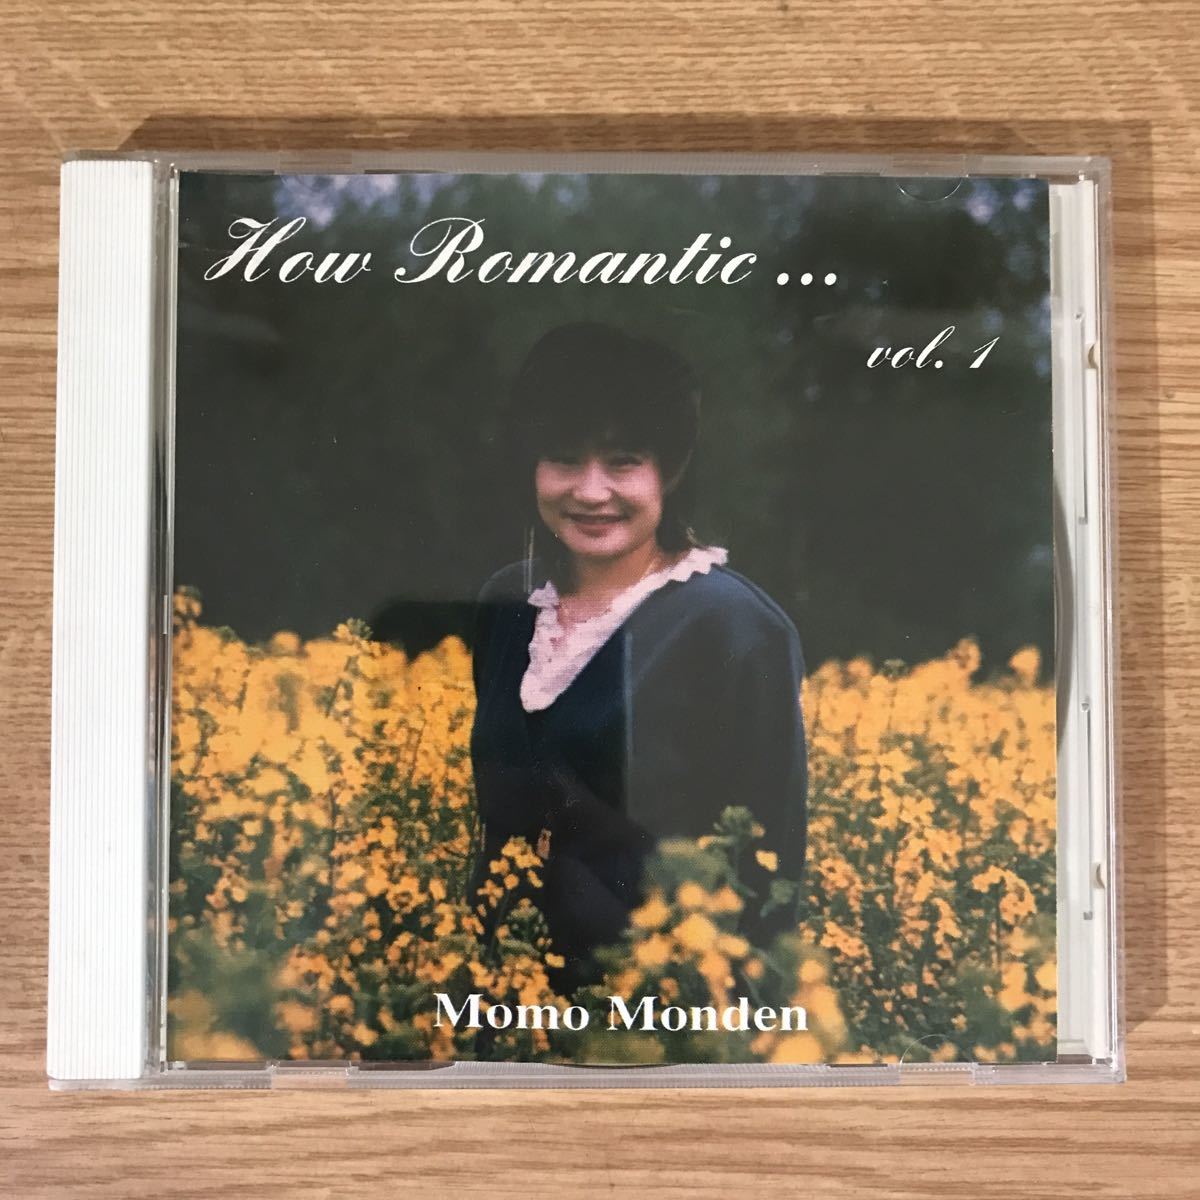 E267 中古CD100円 Momo Monden How Romantic..._画像1